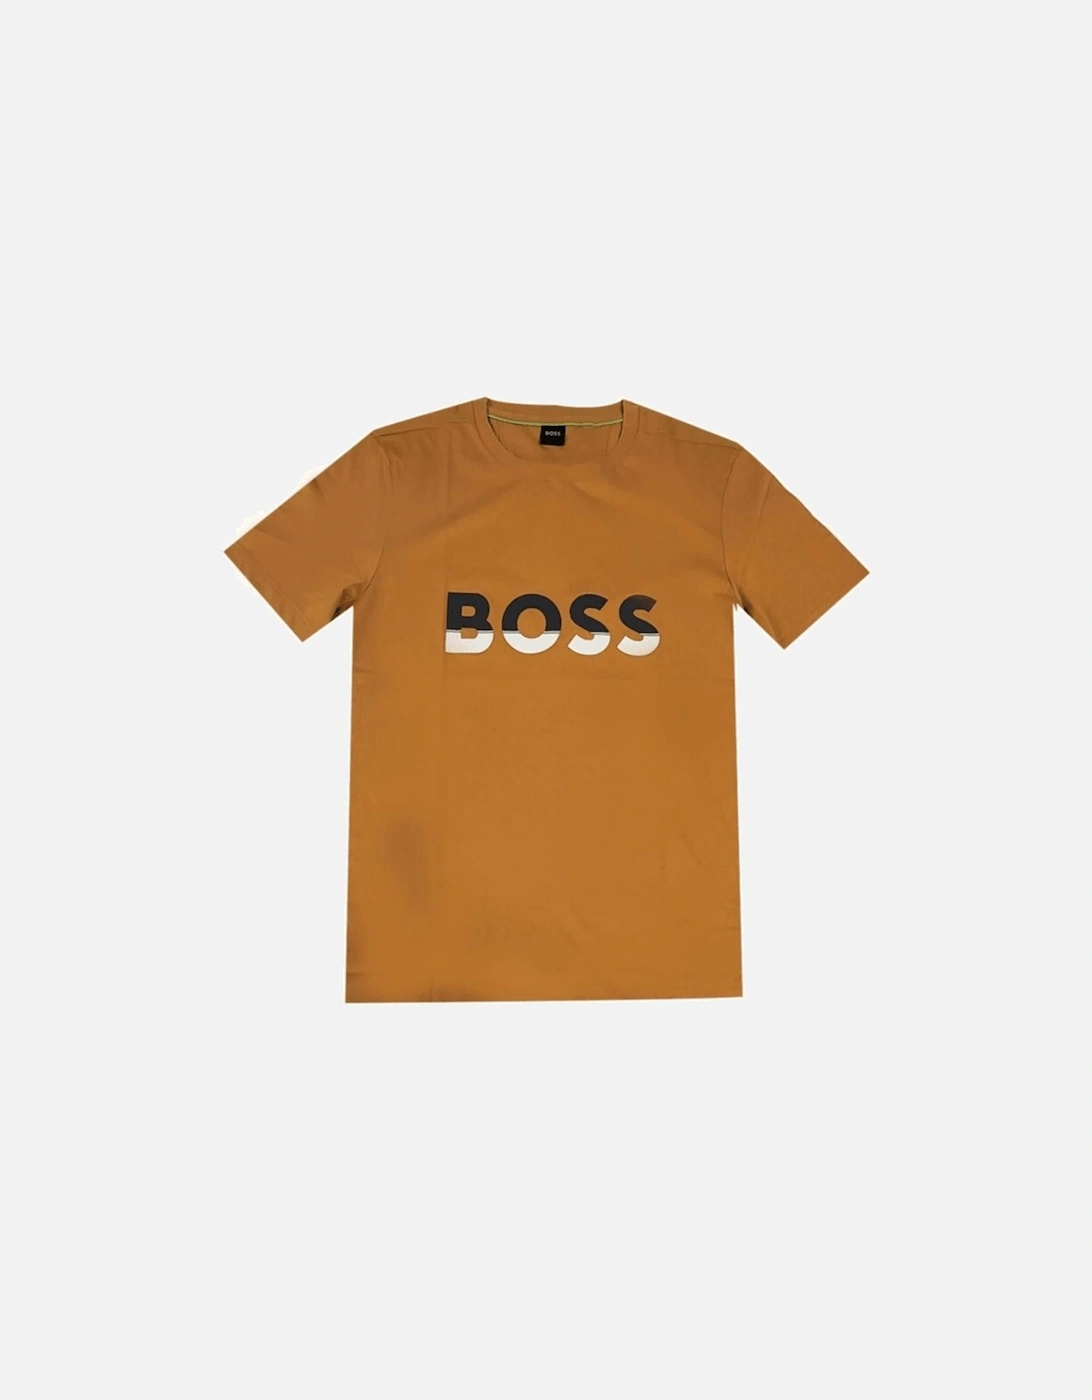 Tee 1 Logo Print Regular Fit Orange T-Shirt, 2 of 1